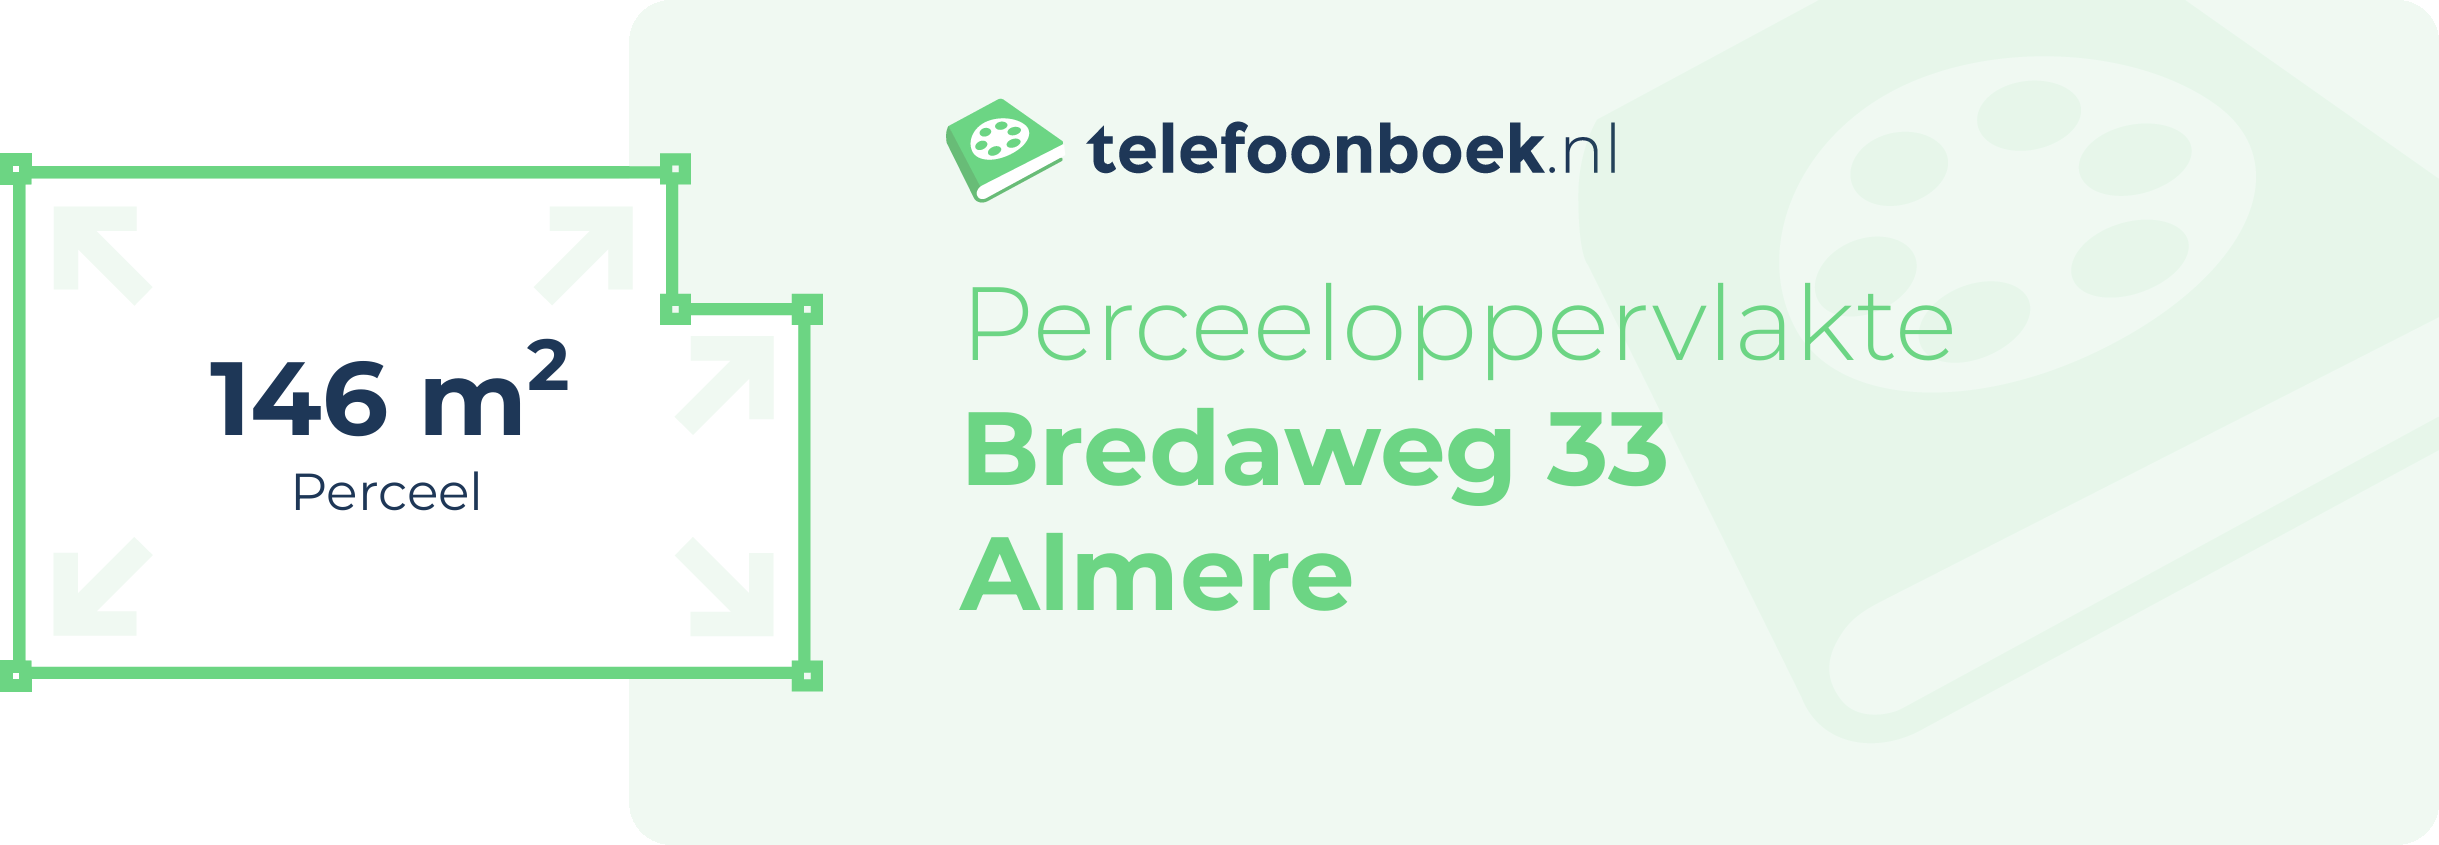 Perceeloppervlakte Bredaweg 33 Almere